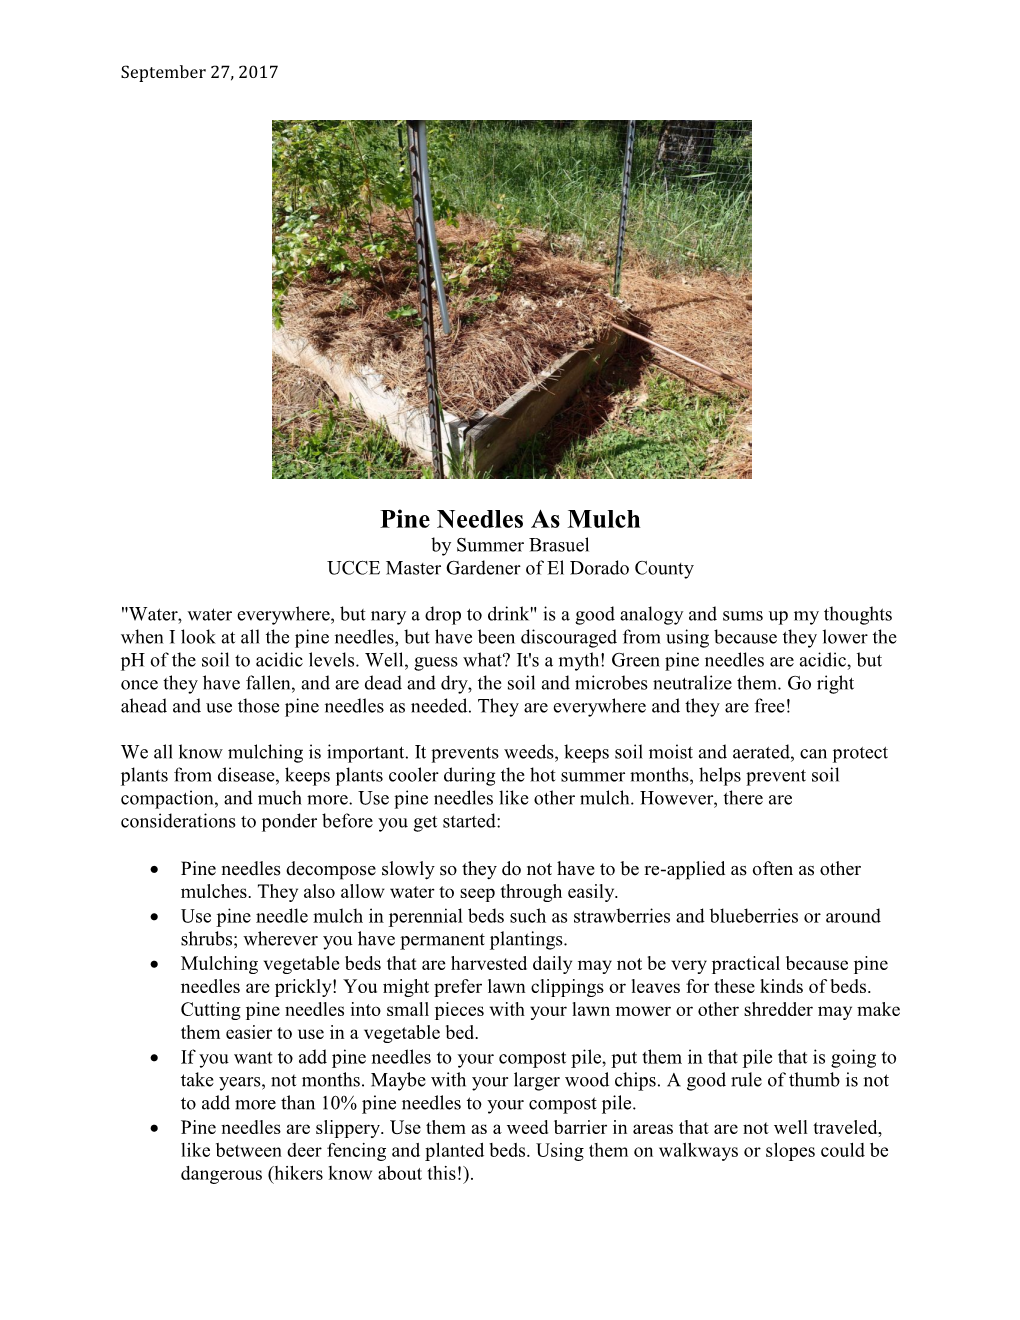 Pine Needles As Mulch by Summer Brasuel UCCE Master Gardener of El Dorado County